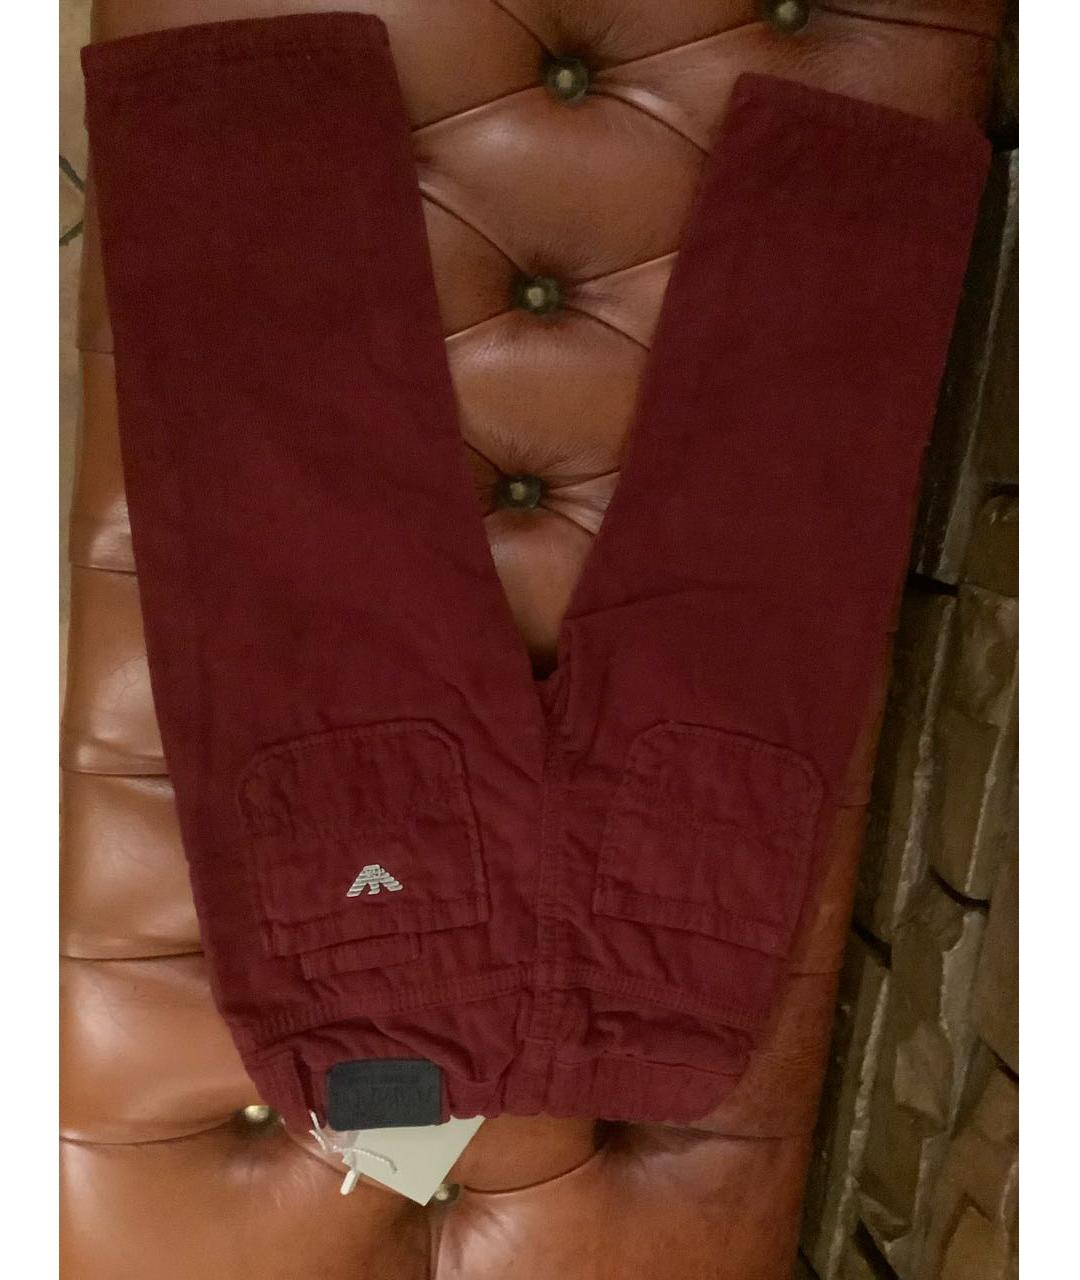 ARMANI JUNIOR Бордовые хлопковые брюки и шорты, фото 2